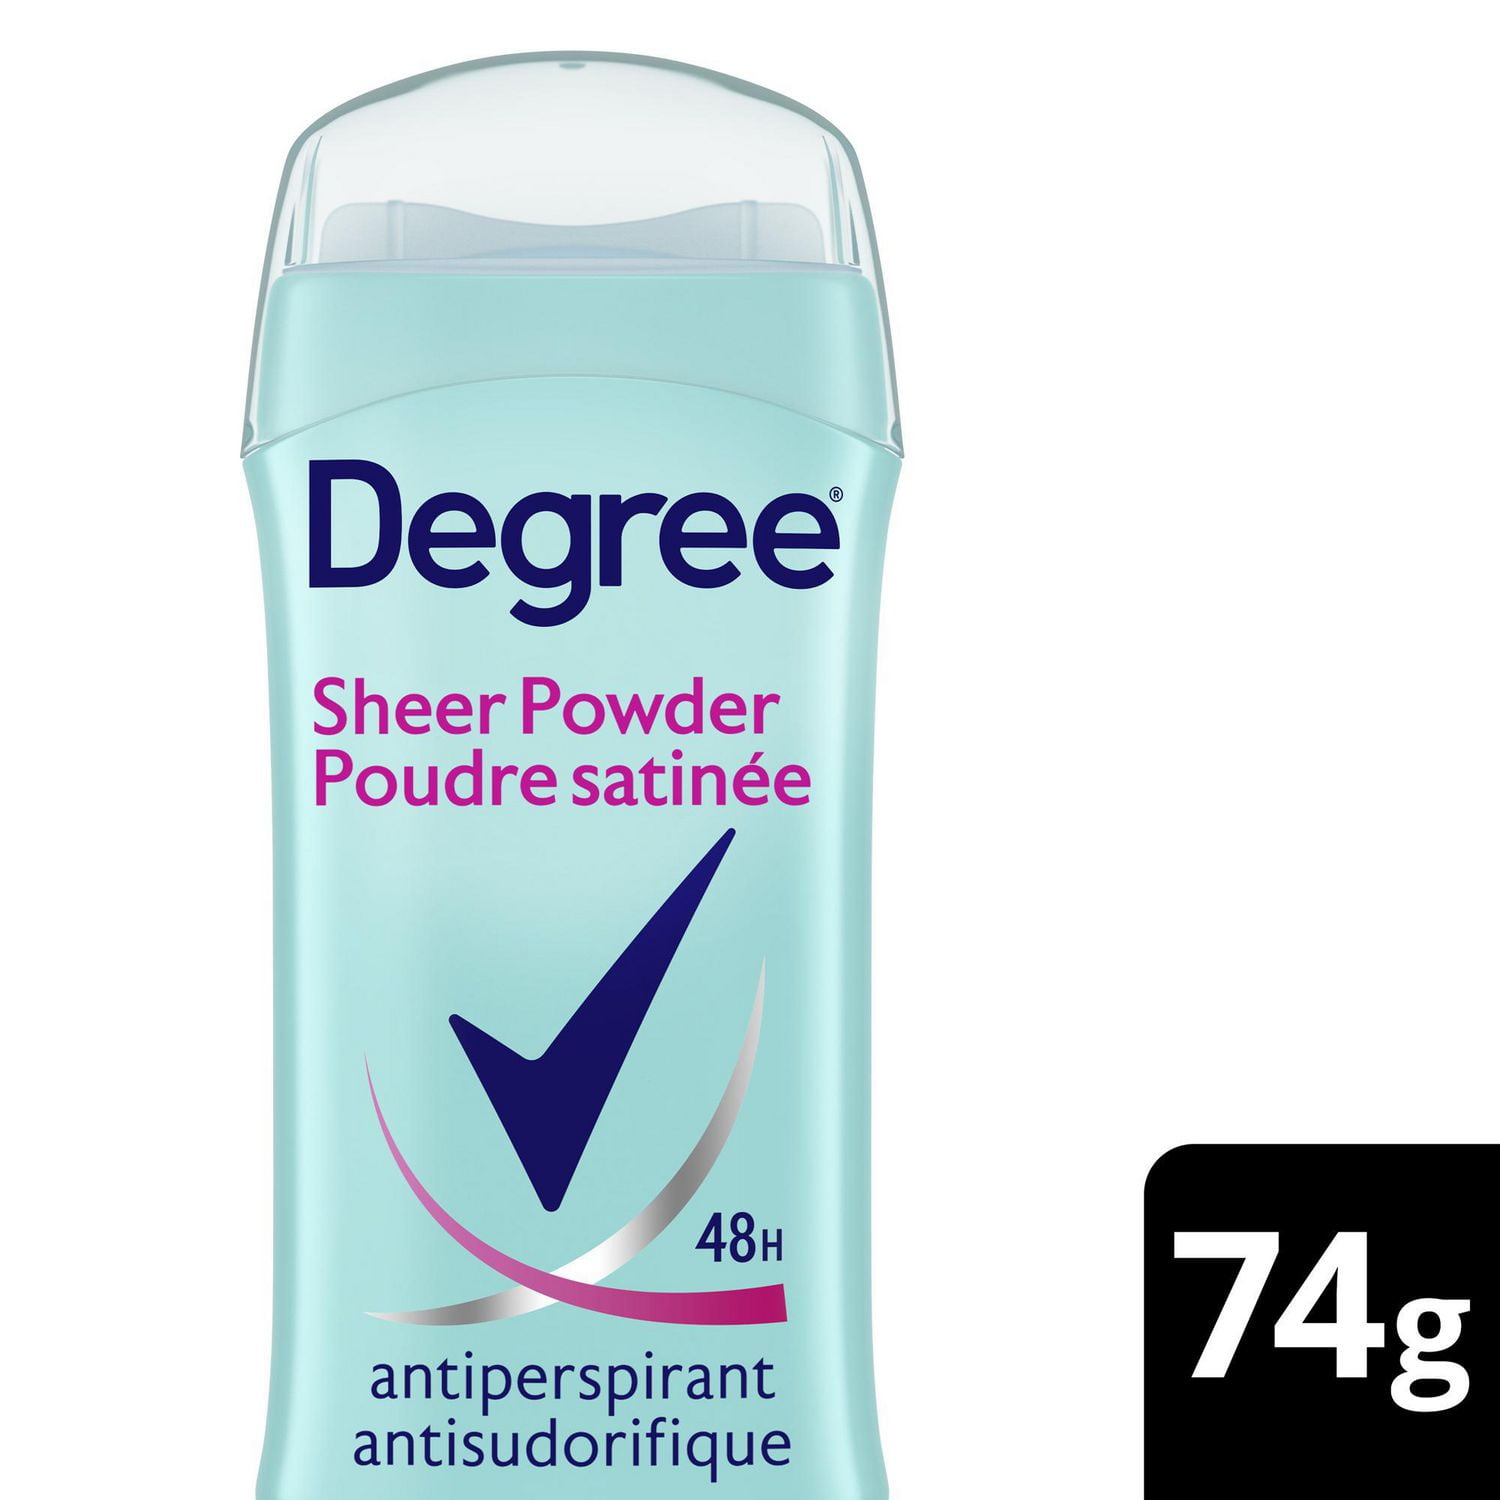 Soft Powder, Cream Stick Deodorant, Lume Deodorant